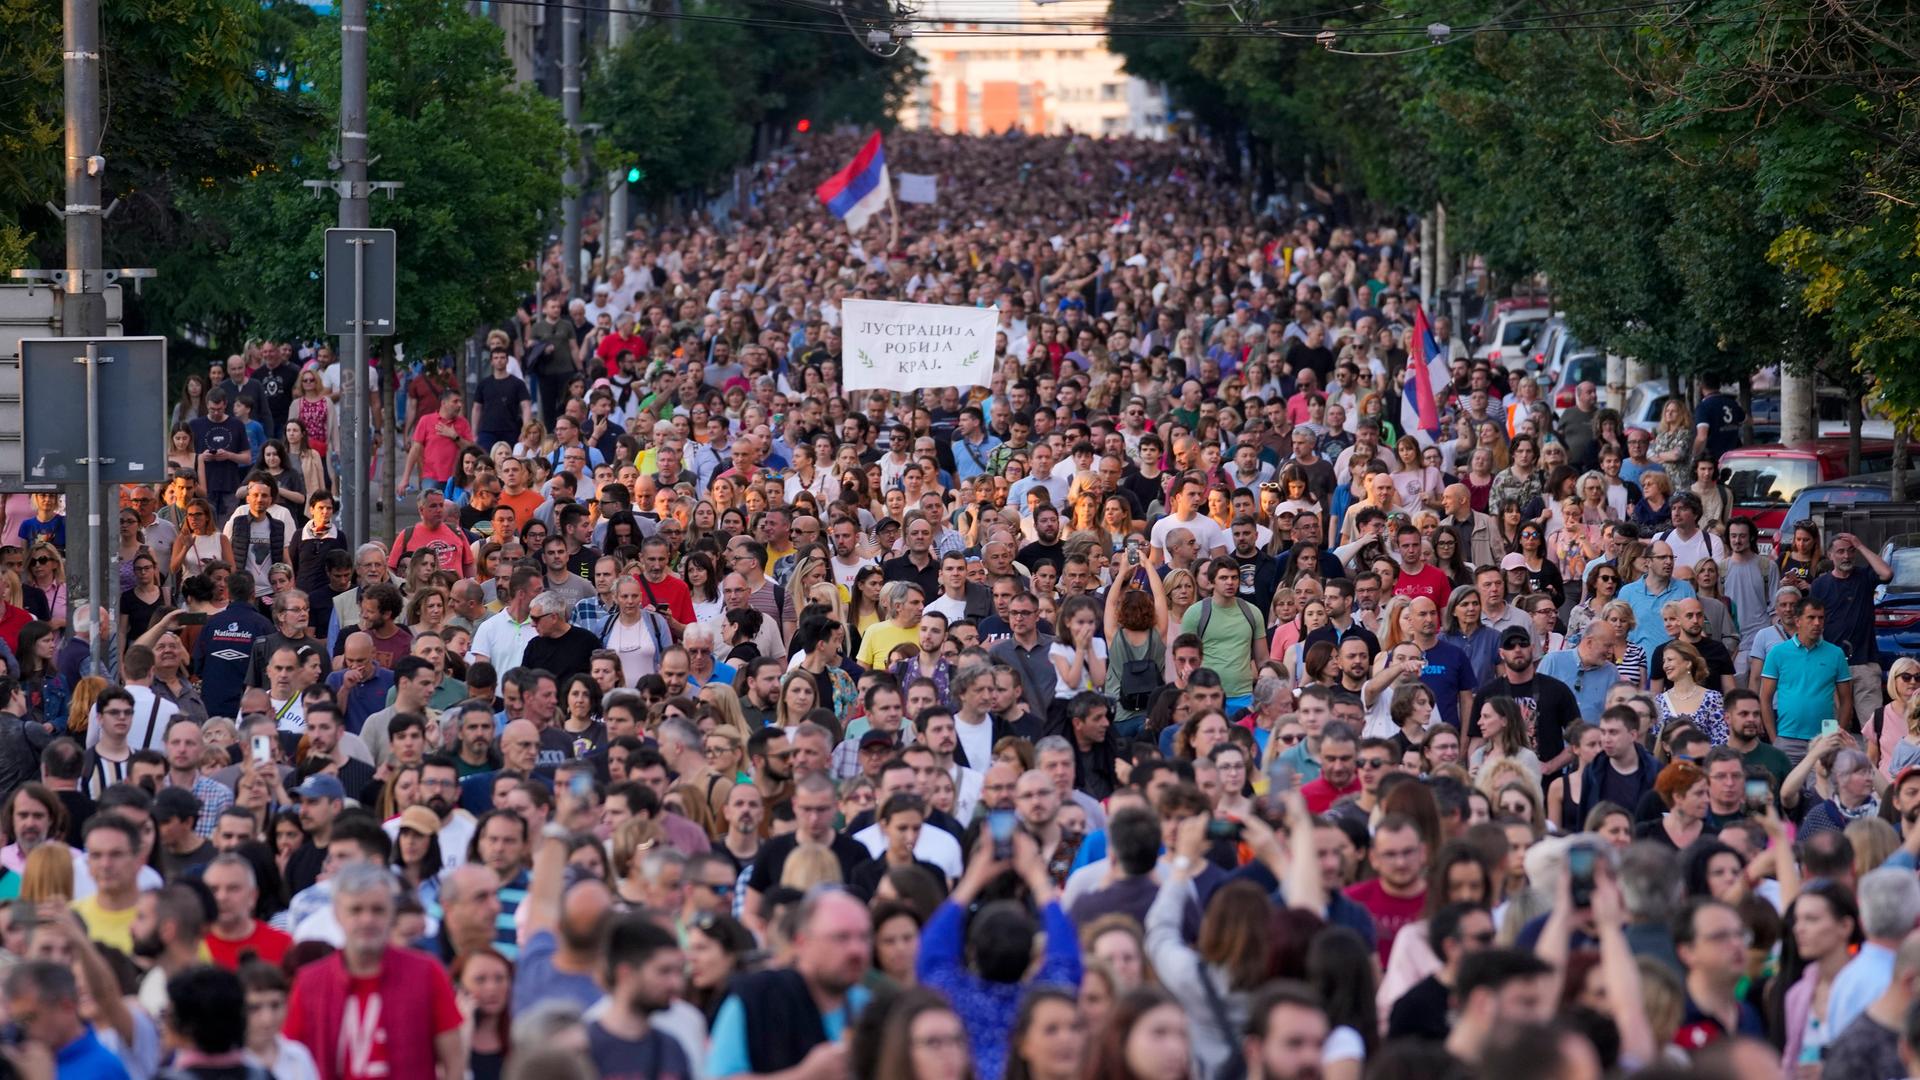 Zahlreiche Menschen in der serbischen Hauptstadt Belgrad nehmen an einer Demonstration gegen Gewalt teil.